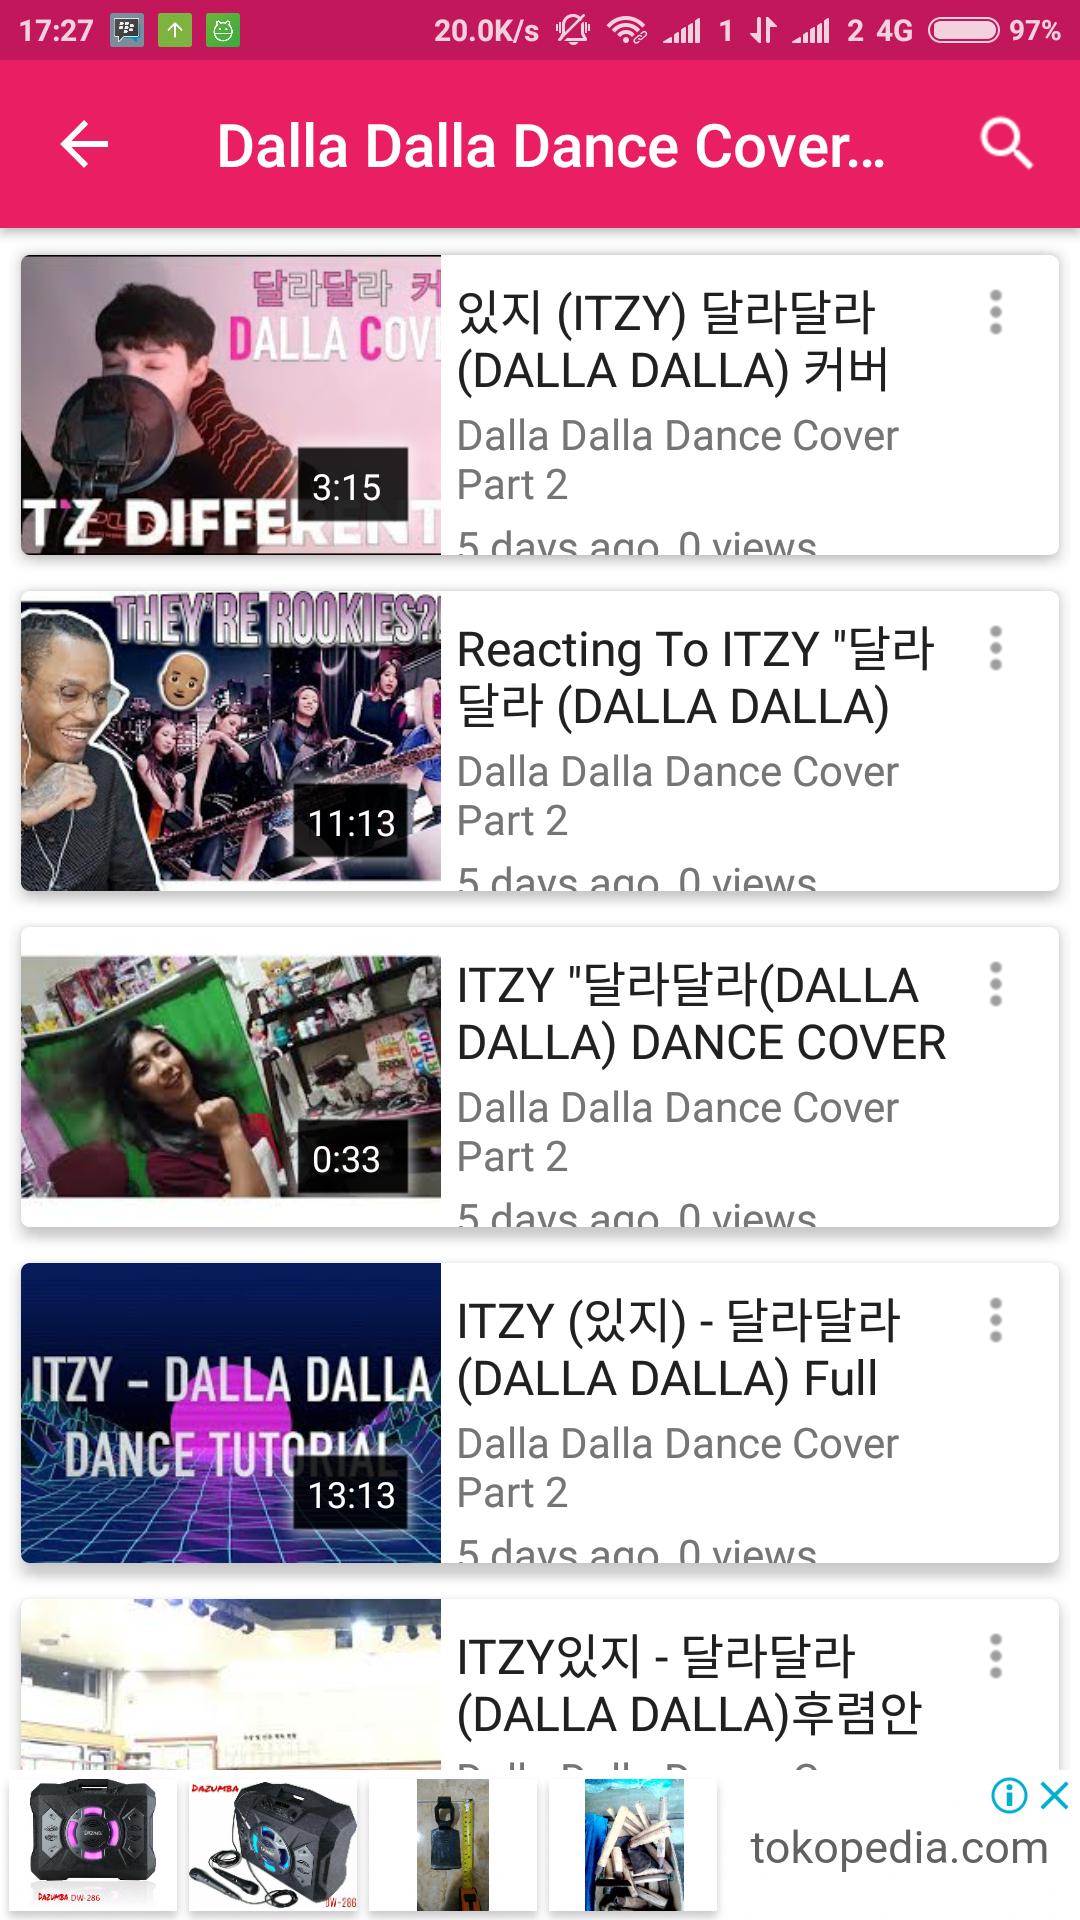 Dalla Dalla Dance Cover For Android Apk Download - roblox on dance itzy dalla dalla kpop dance cover